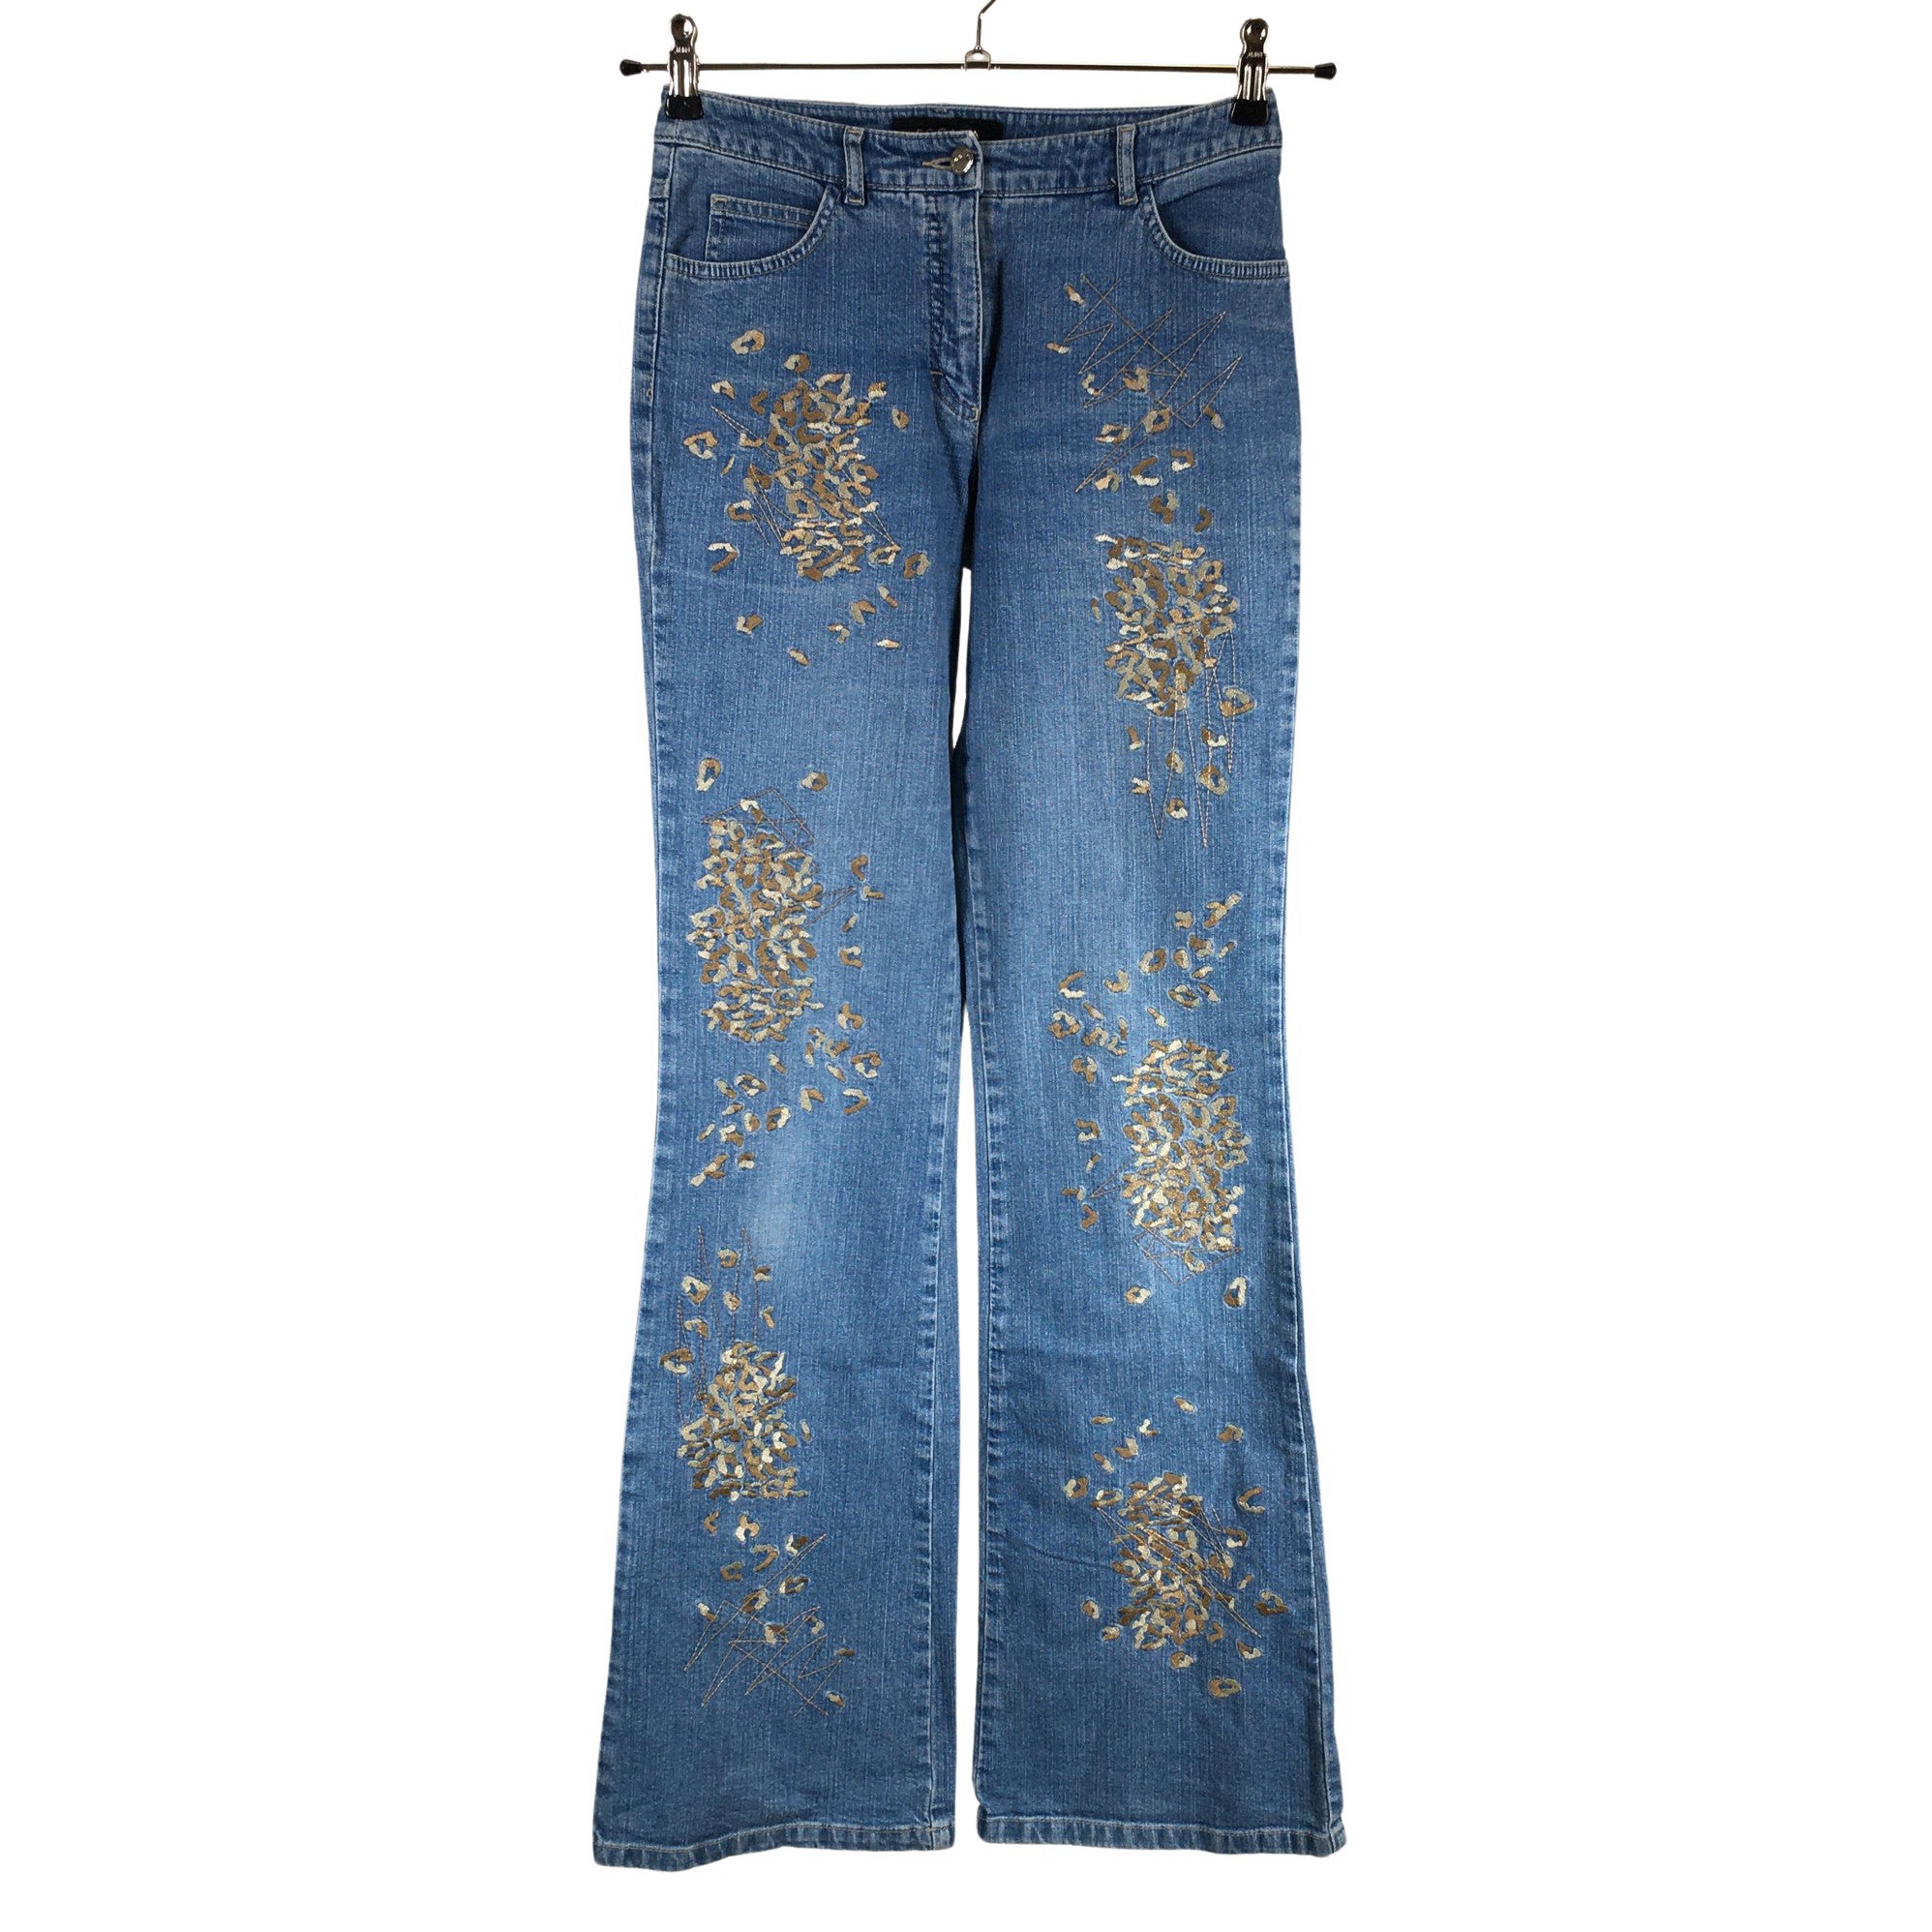 Women's Escada Jeans, size 34 (Blue)